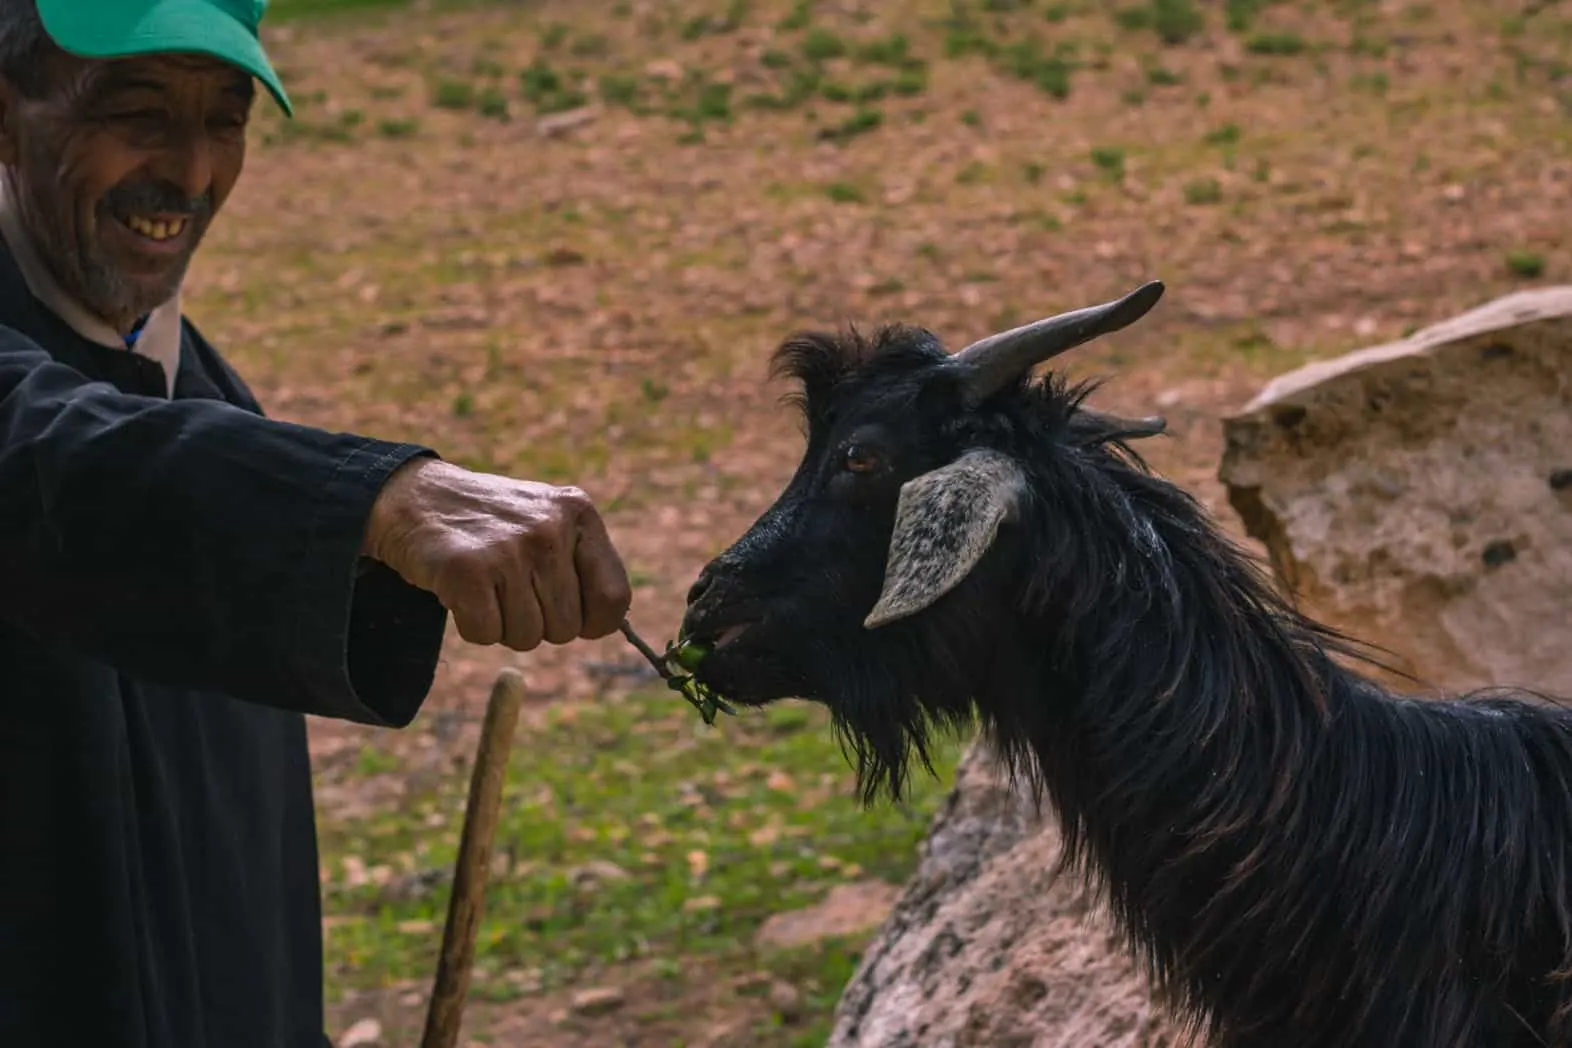 Goat eating argan seeds